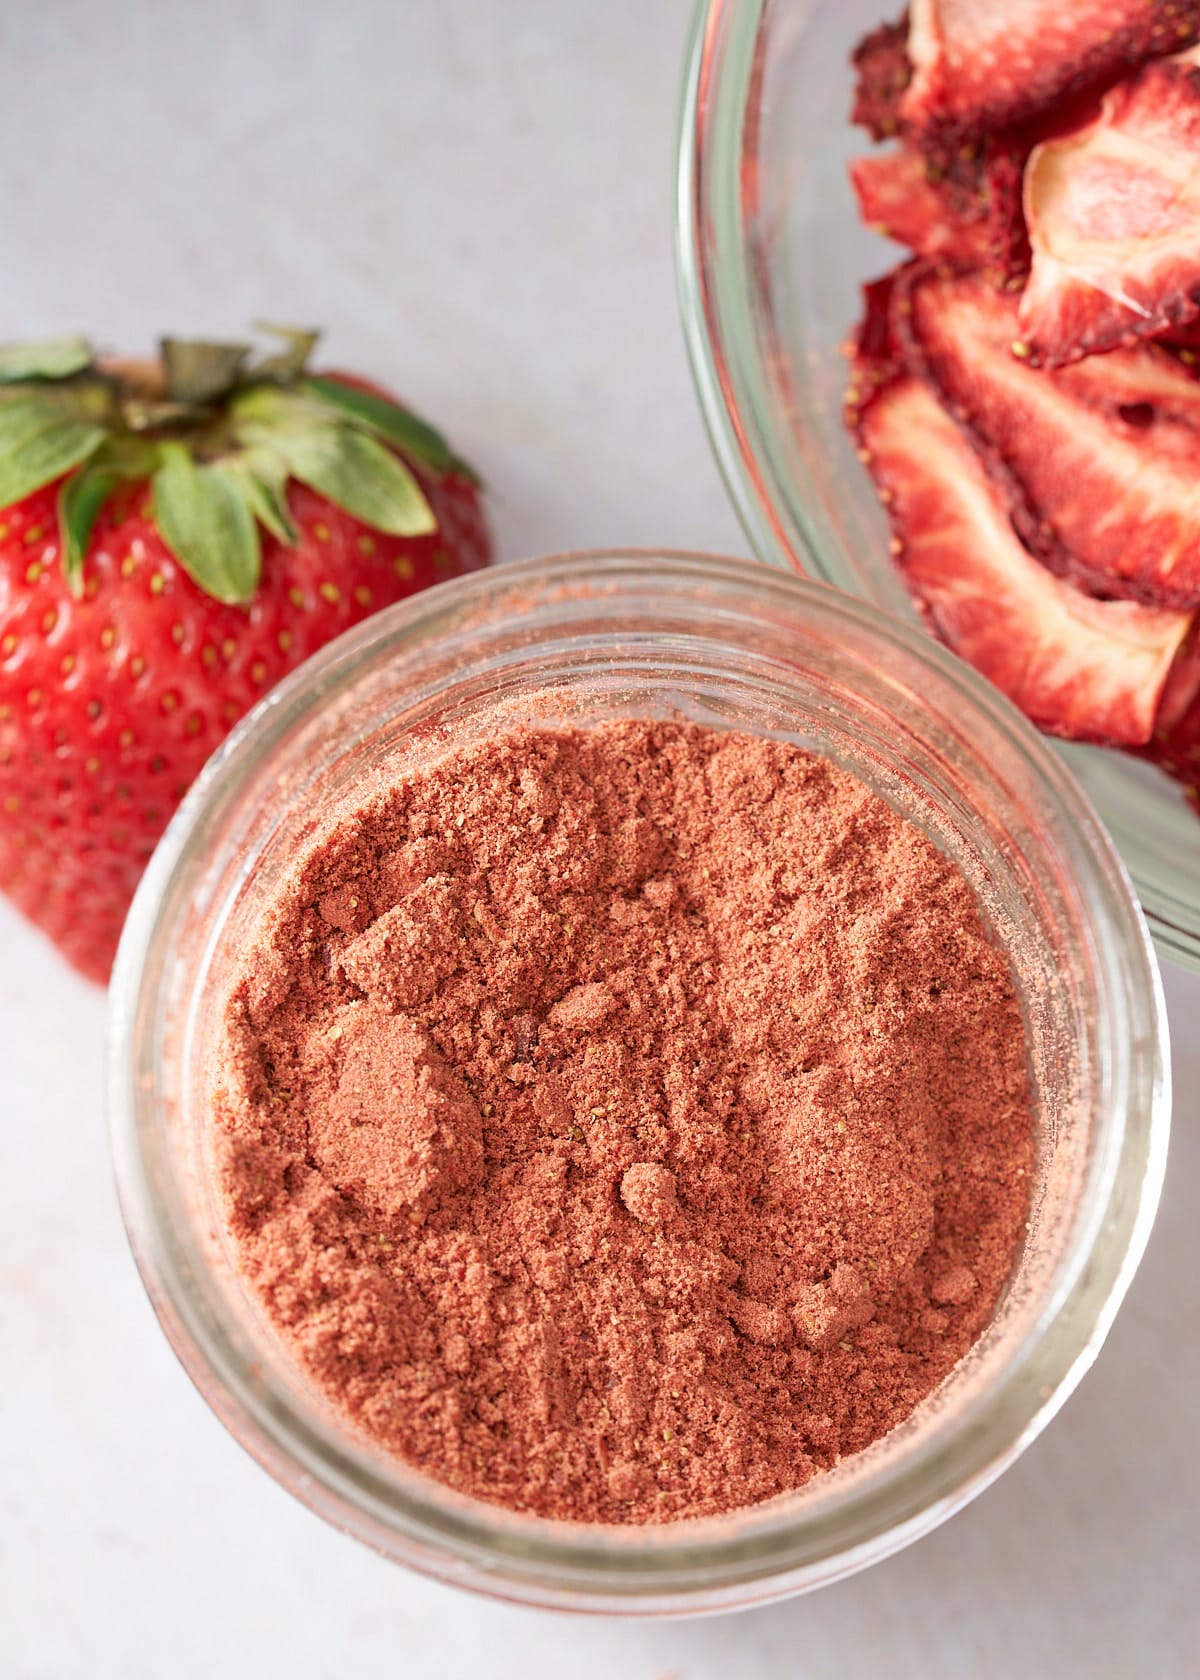 strawberry powder in glass jar